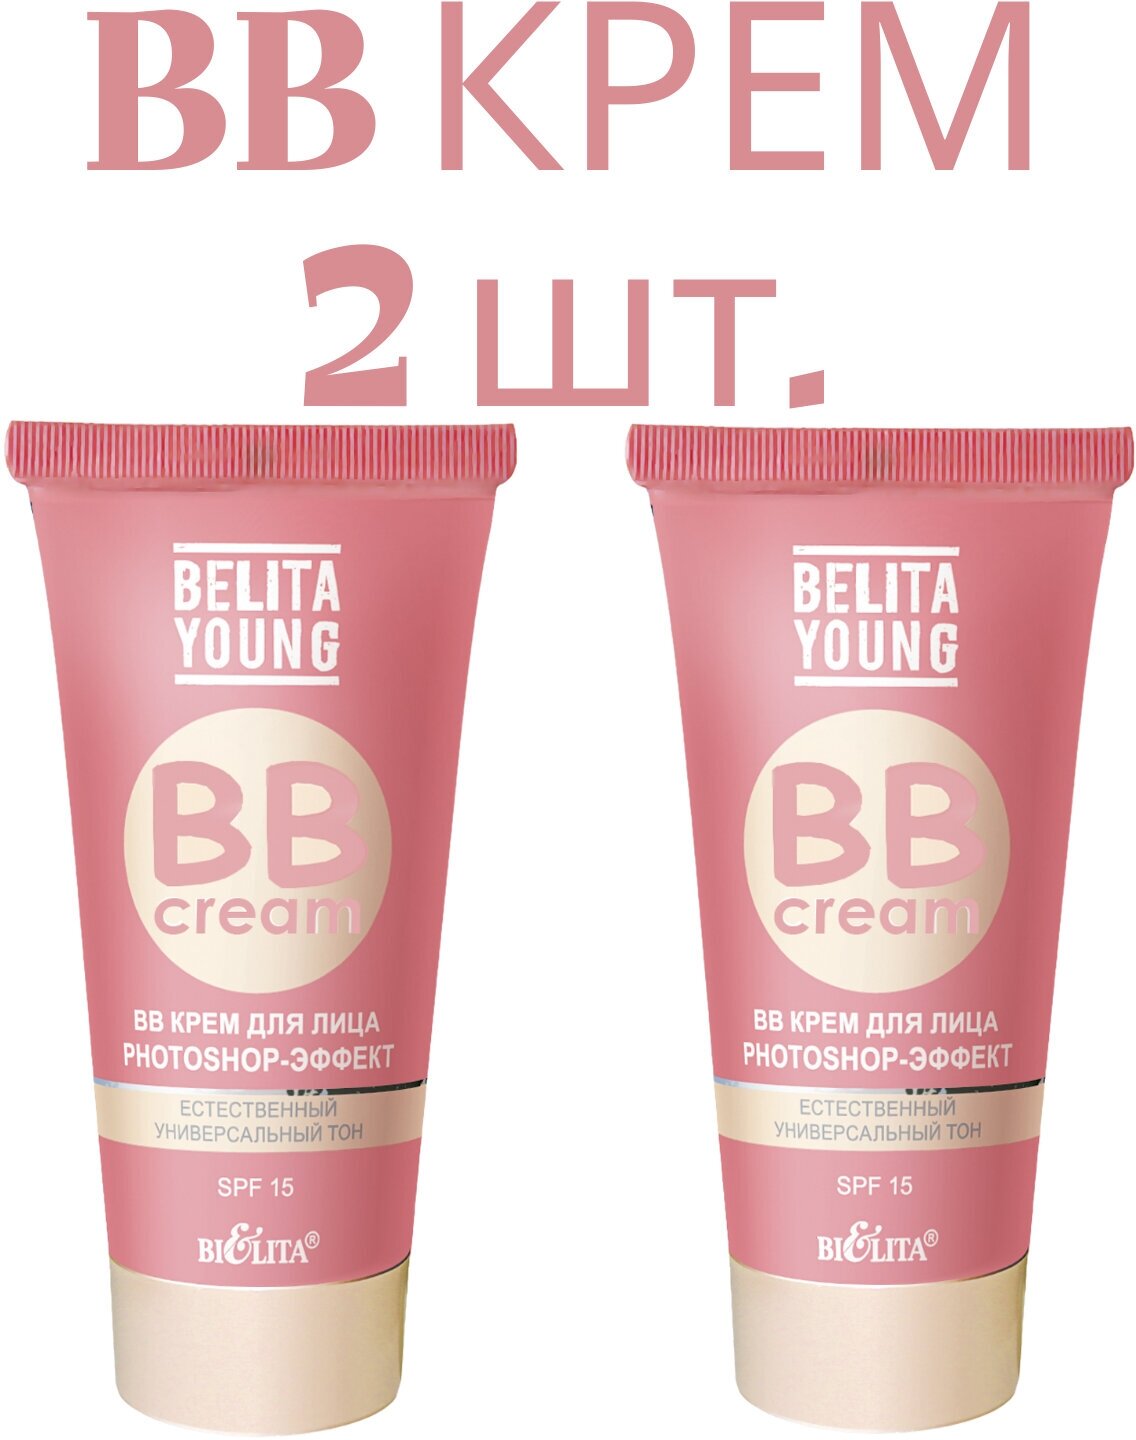 BB Крем для лица Belita, Young photoshop-эффект, 30 мл, SPF 15, крем тональный, BB cream, естественный универсальный тон 2шт.